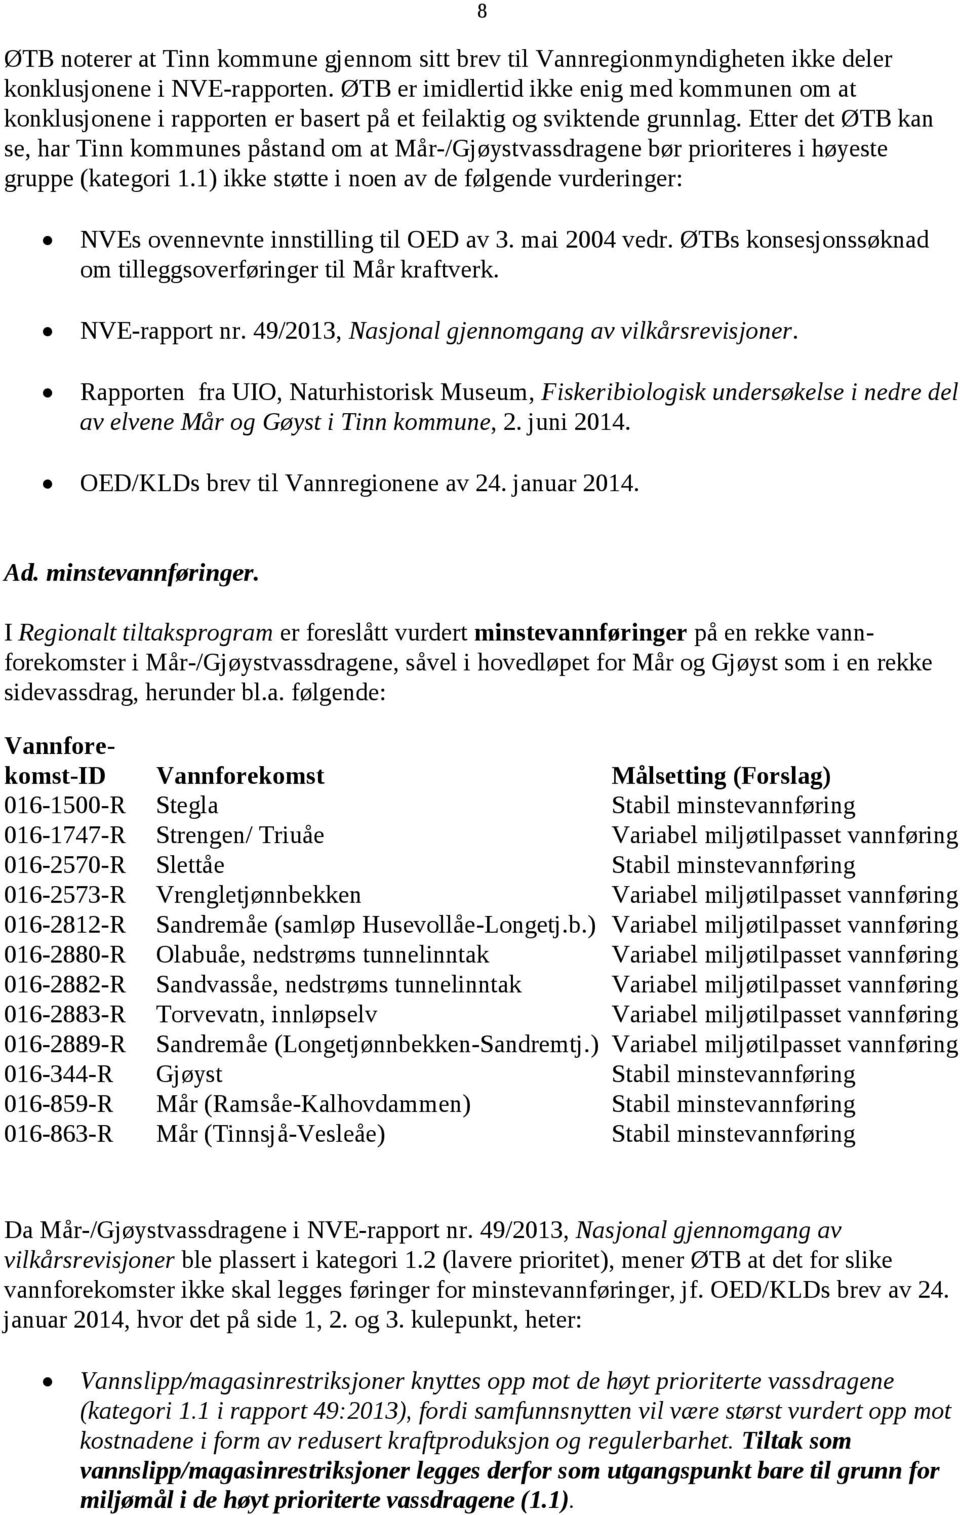 Etter det ØTB kan se, har Tinn kommunes påstand om at Mår-/Gjøystvassdragene bør prioriteres i høyeste gruppe (kategori 1.